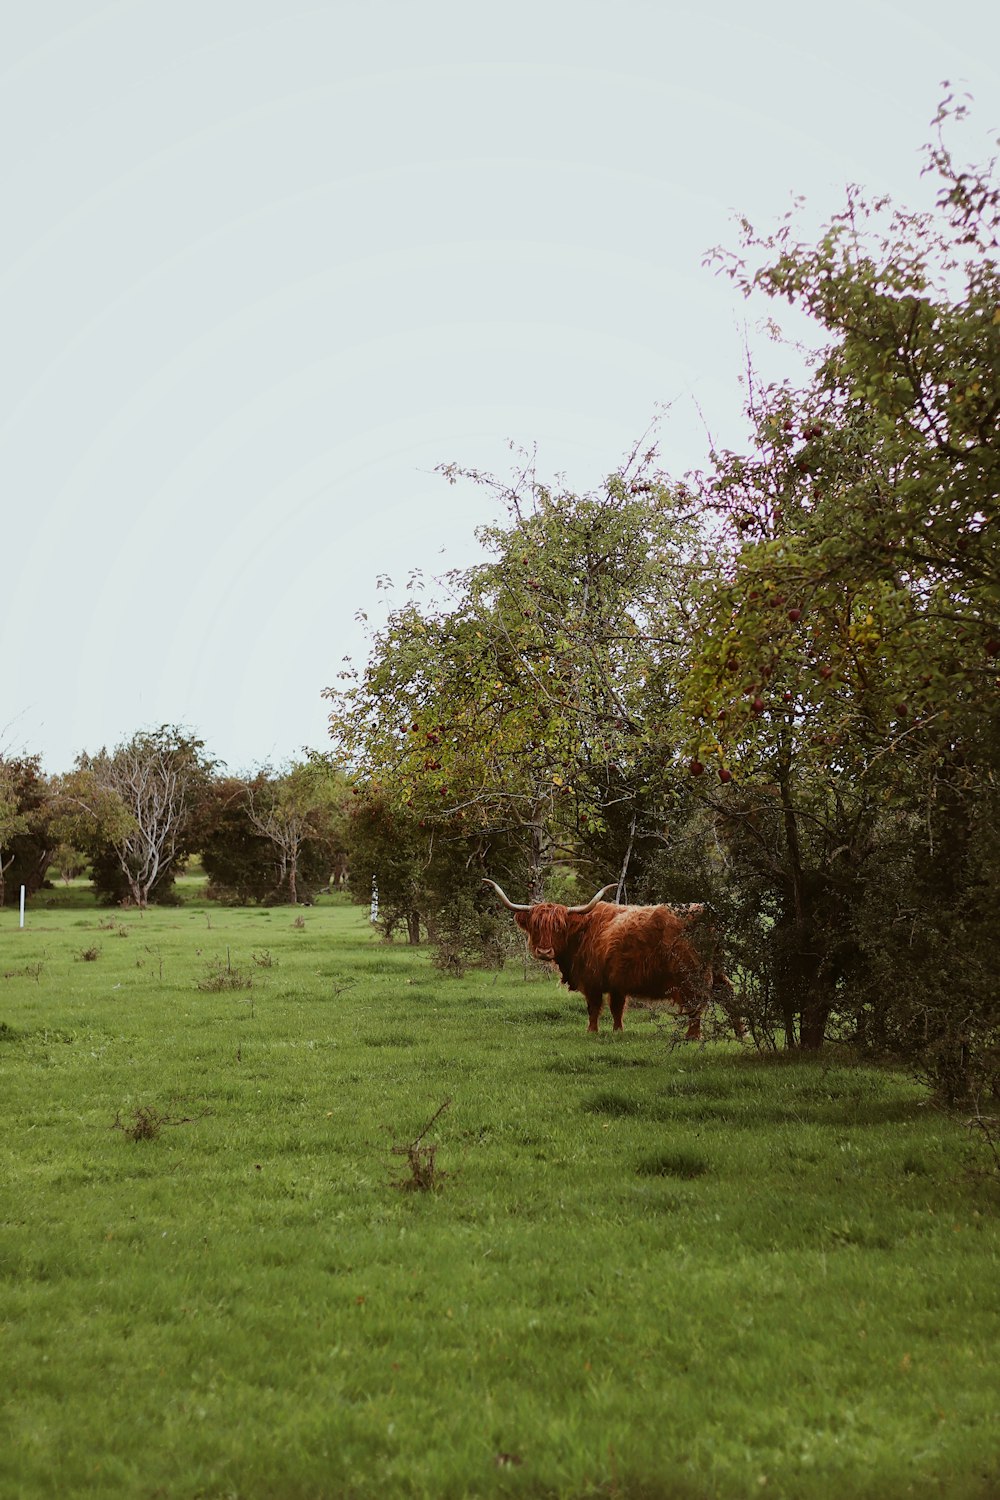 Vache brune sur un champ d’herbe verte pendant la journée